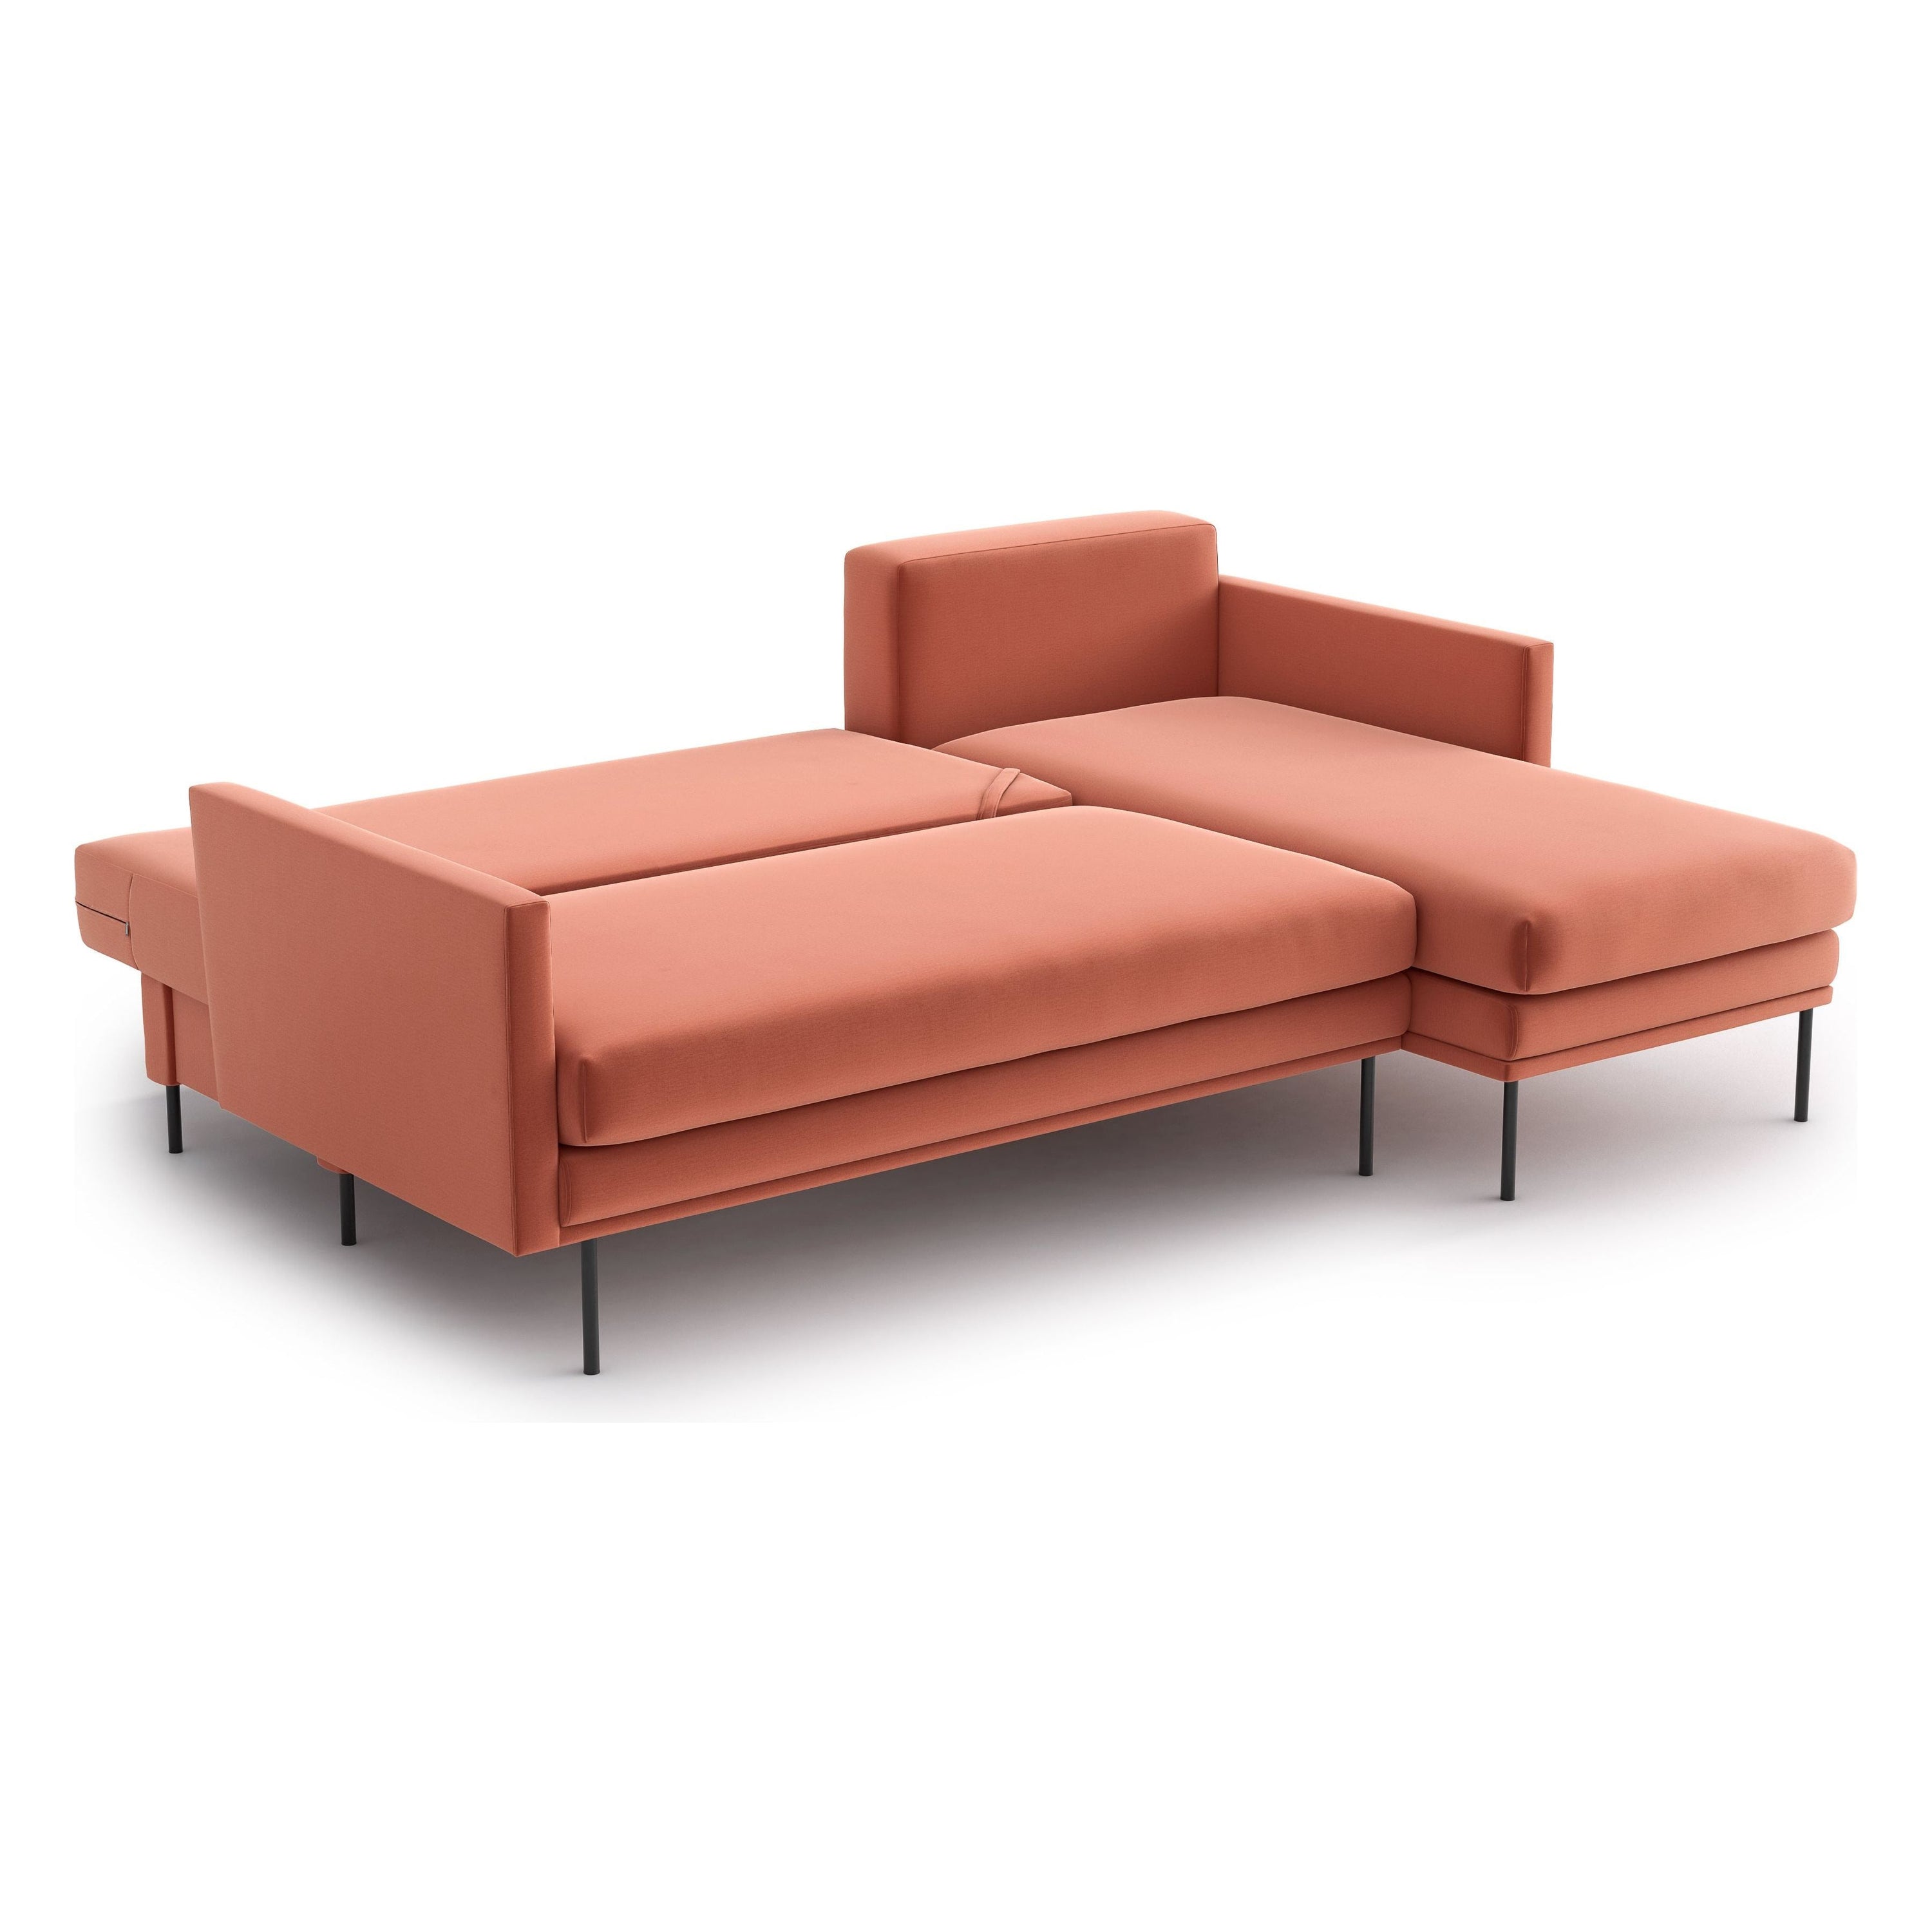 BLUES kampinė sofa lova, persiko spalva, universali kampo pusė